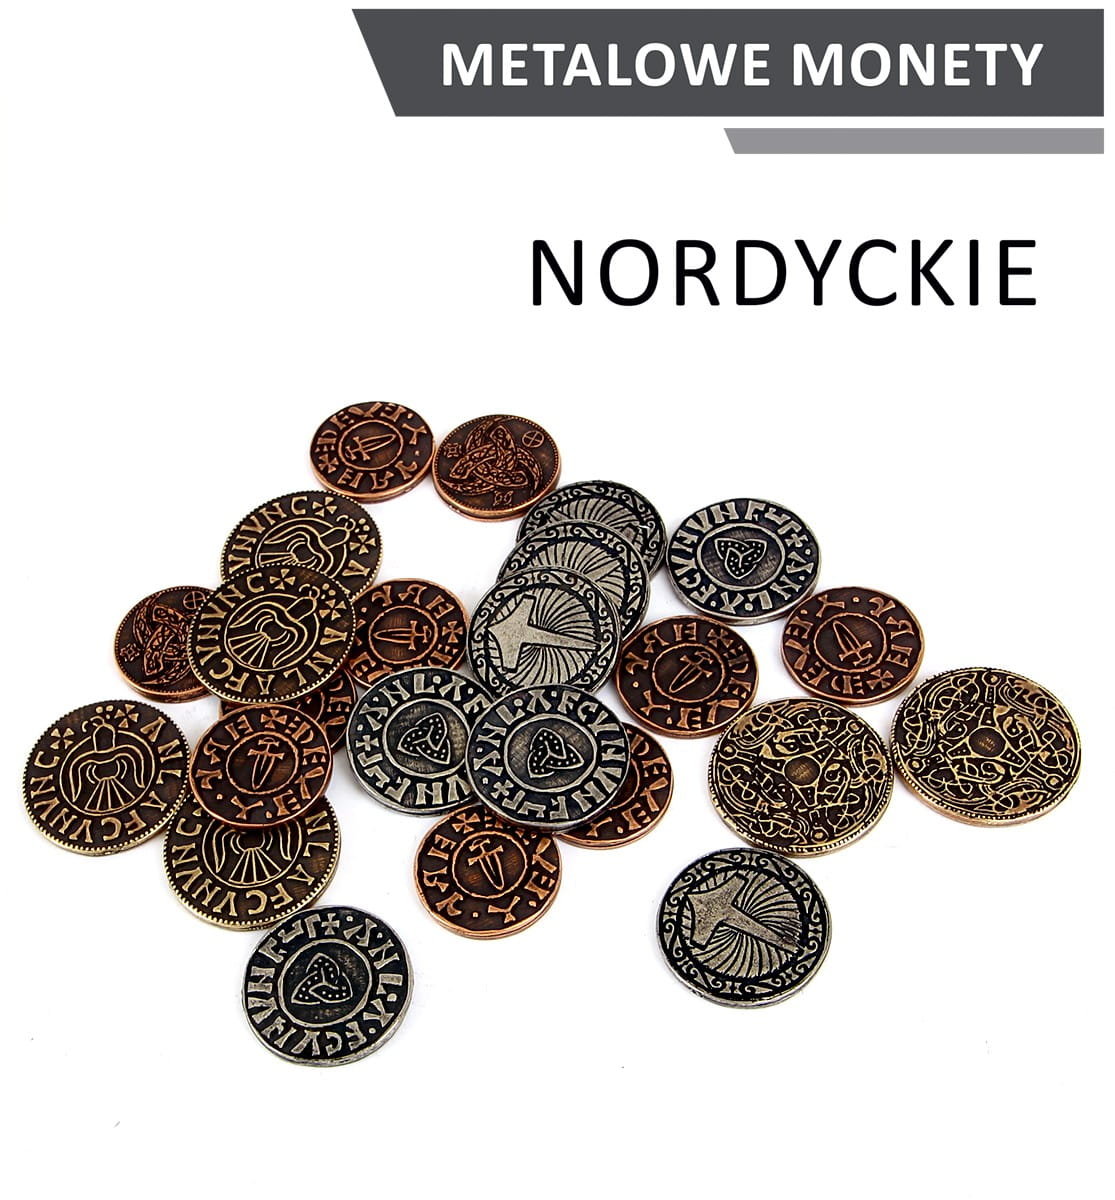 Zdjęcia - Gra planszowa Drawlab Entertainment, Metalowe monety - nordyckie, 24 szt.